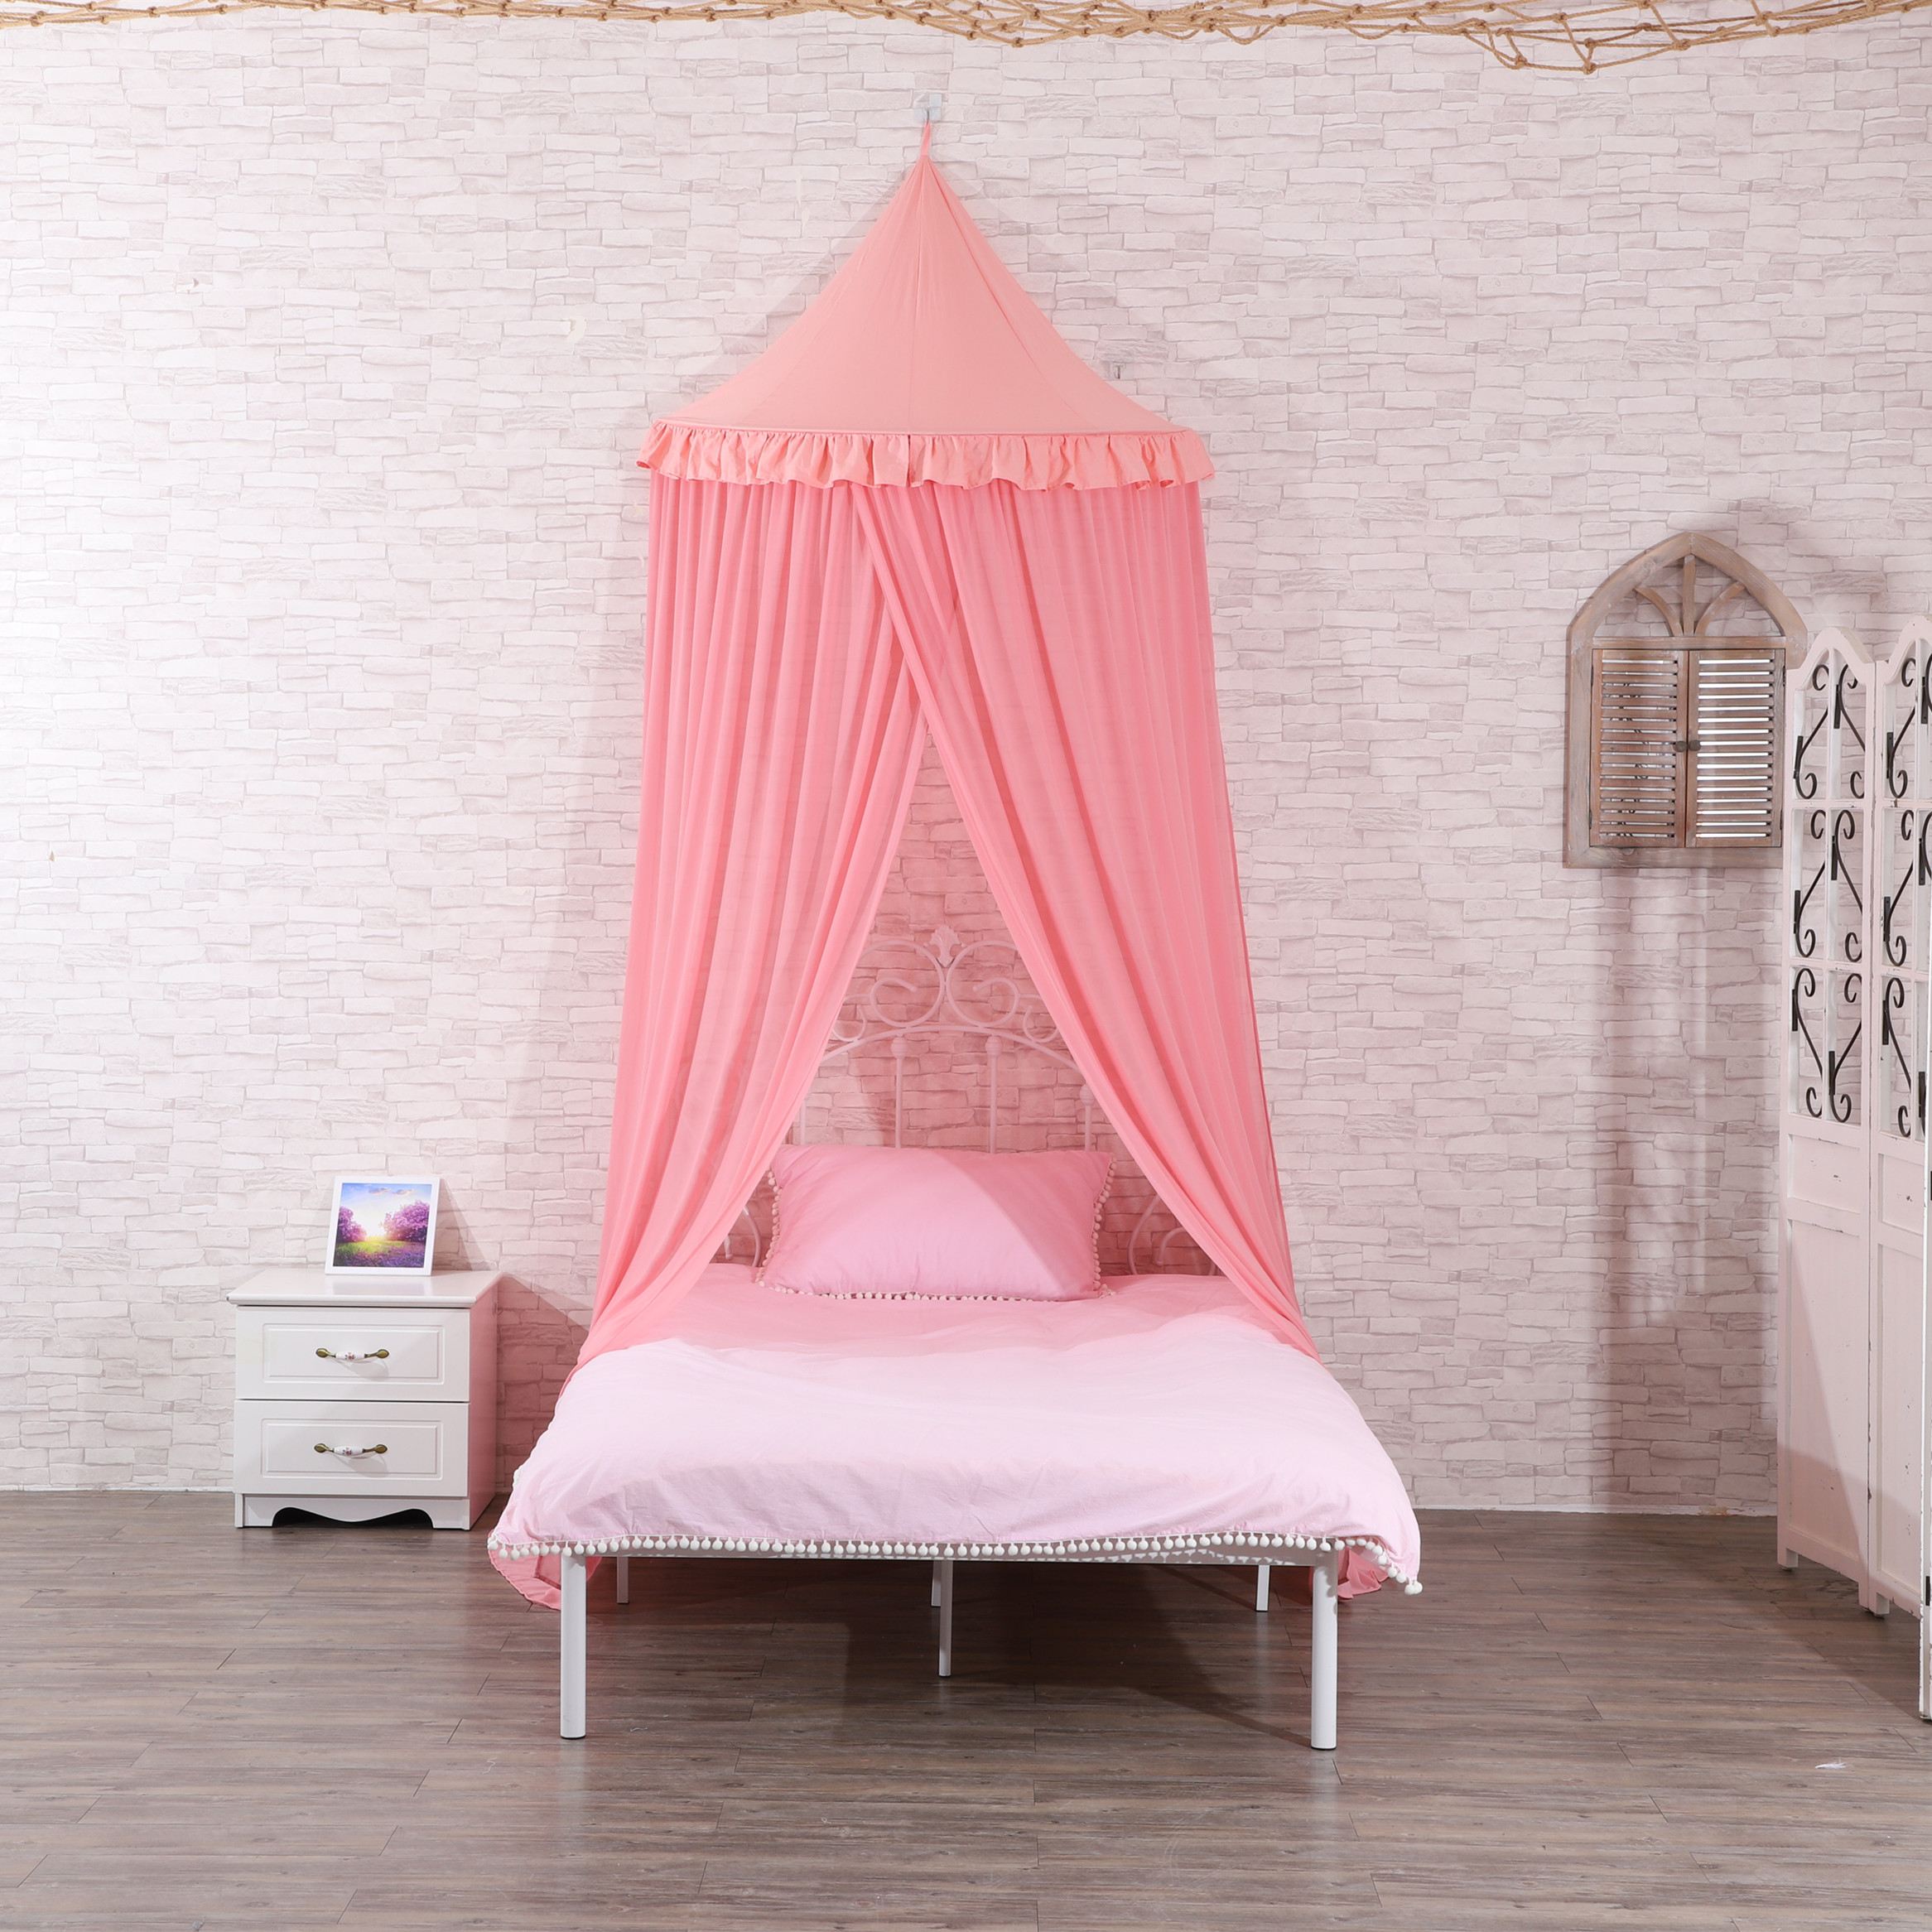 Nuevo diseño princesa mosquiteros media ronda con dosel para cama de noche para niñas